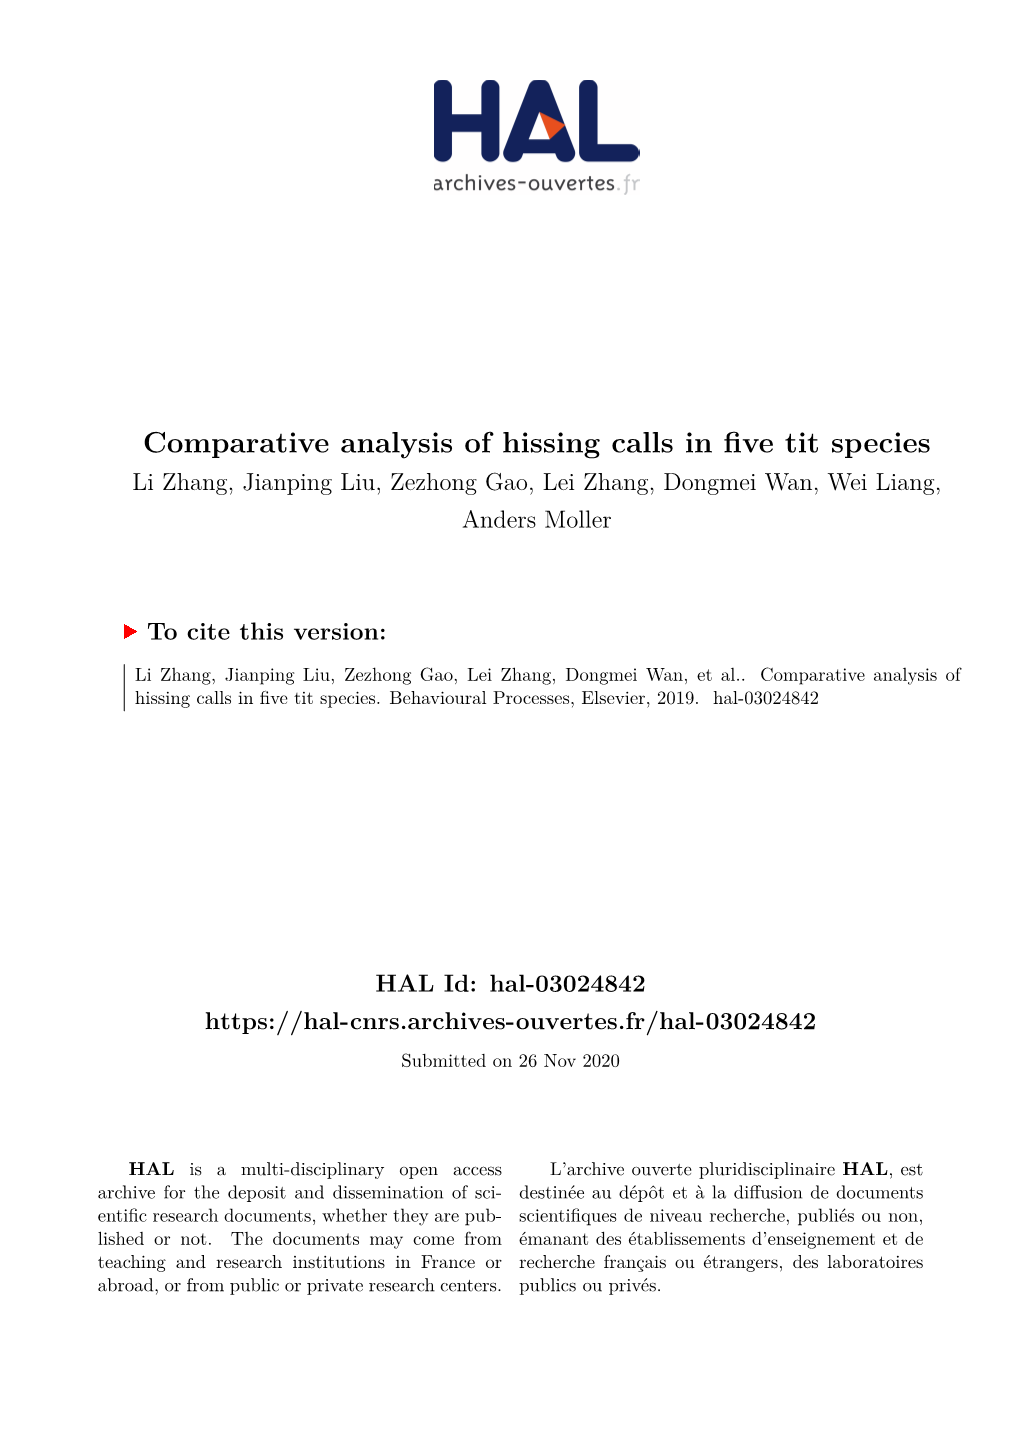 Comparative Analysis of Hissing Calls in Five Tit Species Li Zhang, Jianping Liu, Zezhong Gao, Lei Zhang, Dongmei Wan, Wei Liang, Anders Moller